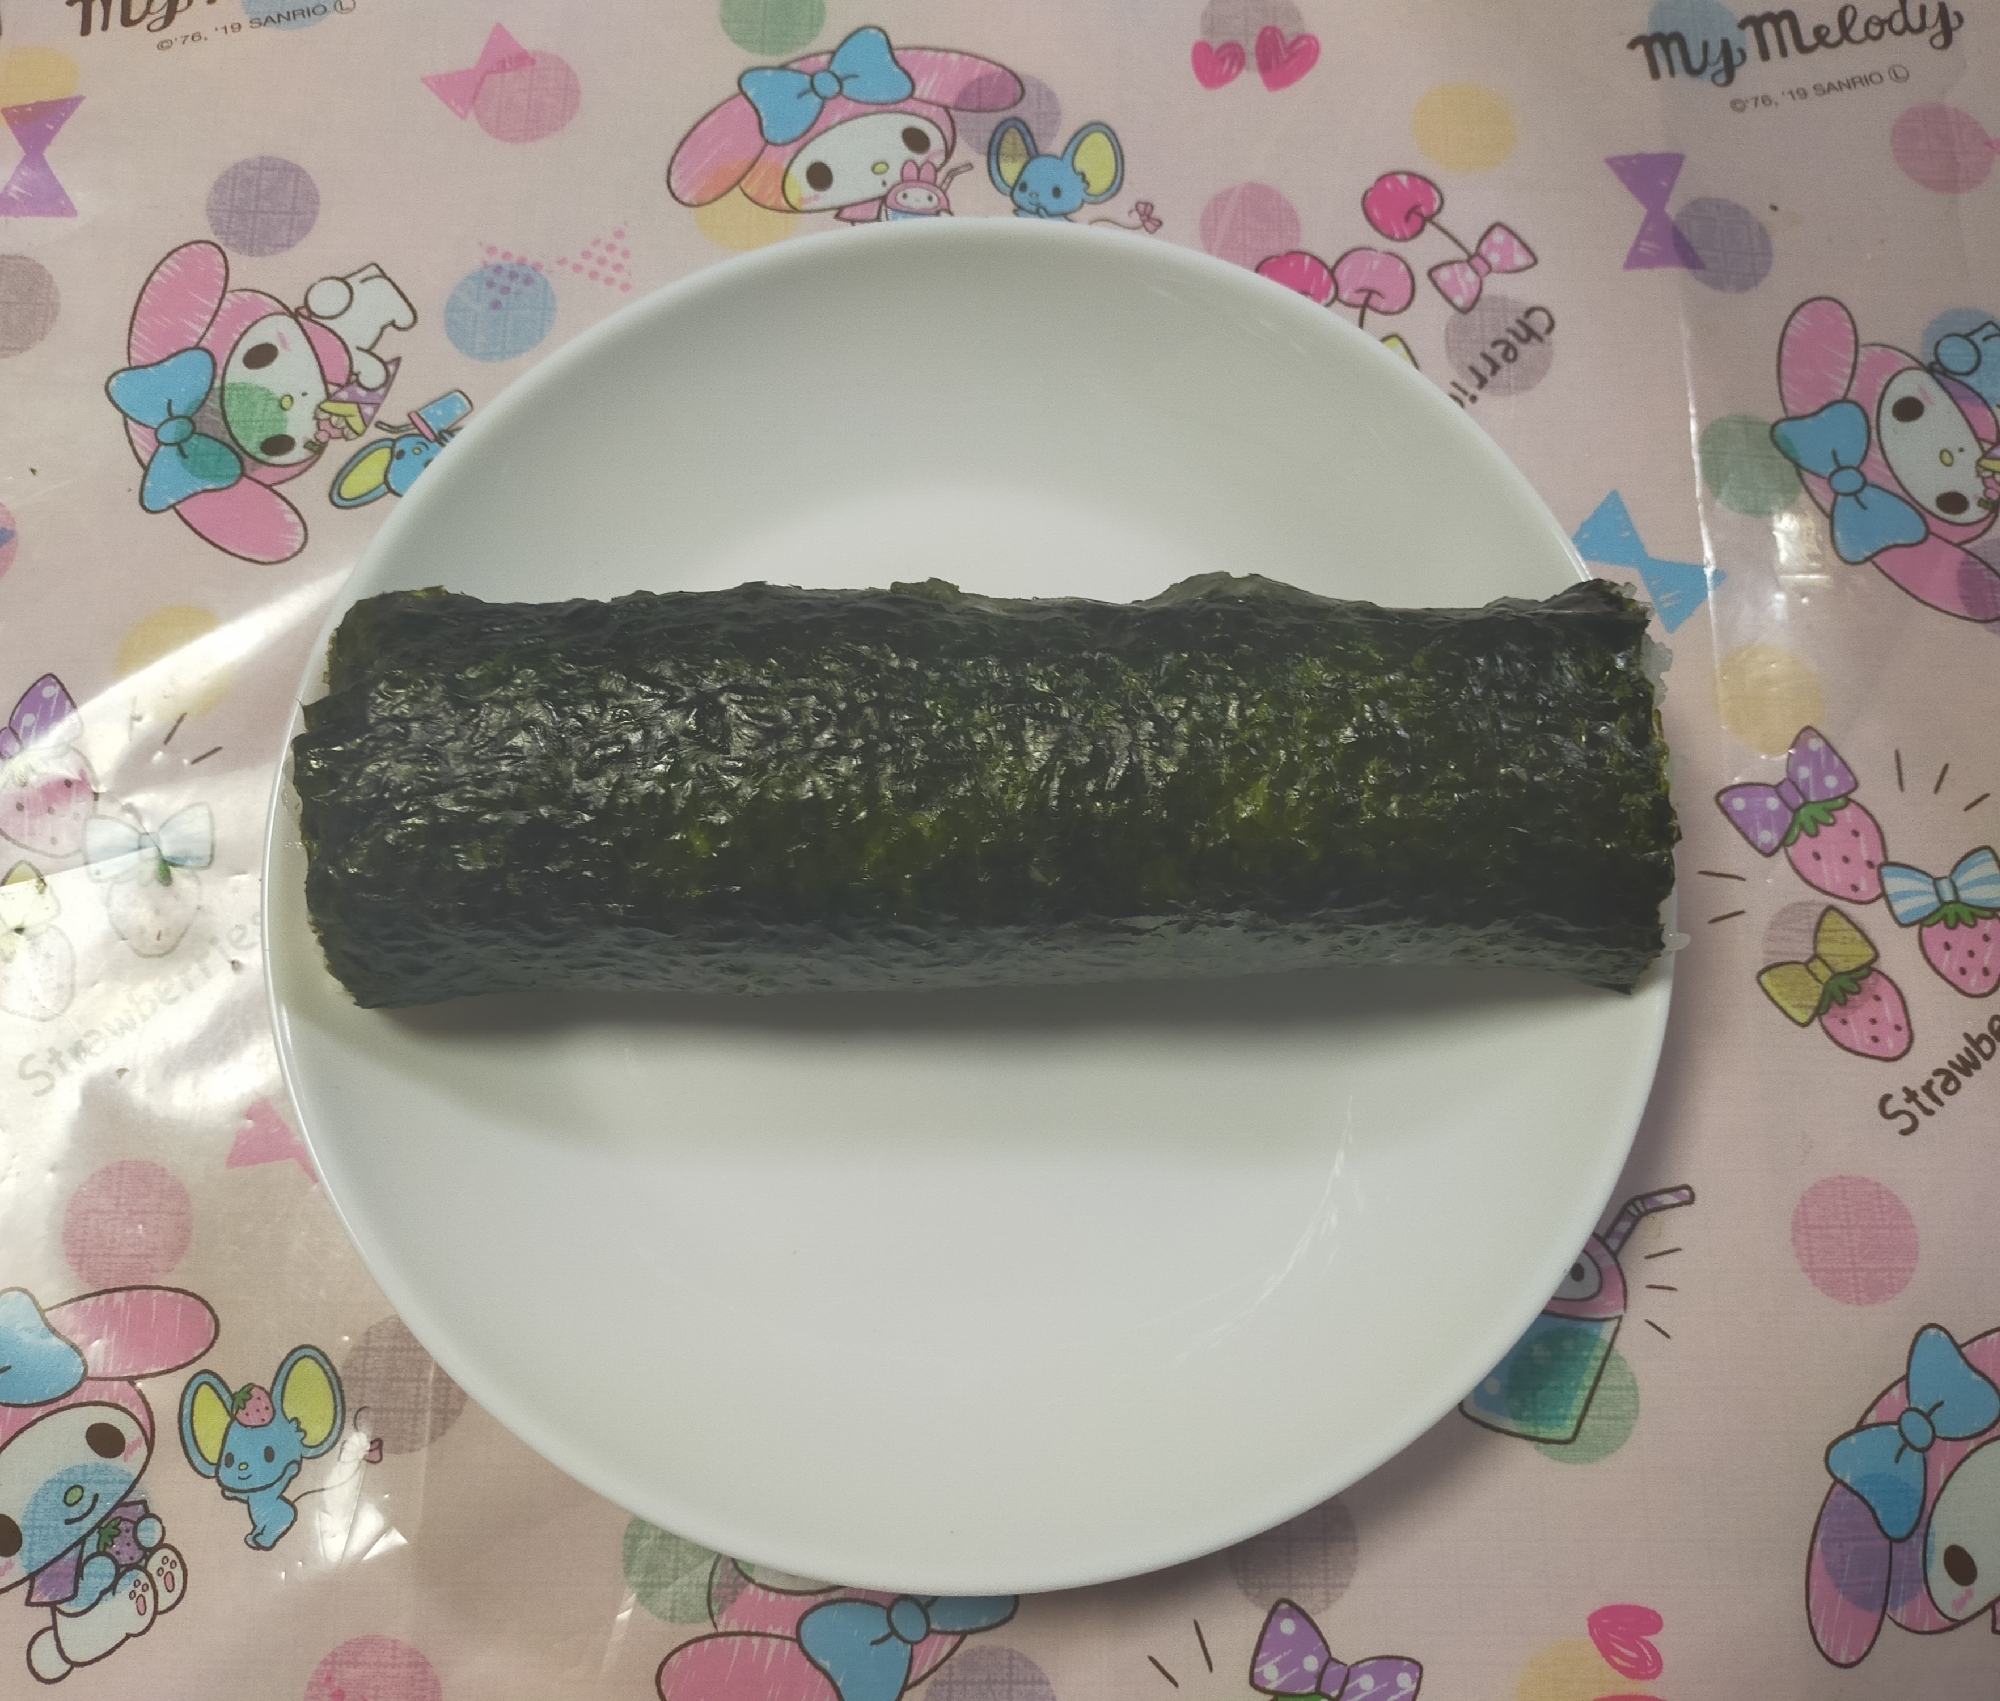 2/3節分(*´∇`)ﾉ恵方巻き手巻き寿司食べよ～